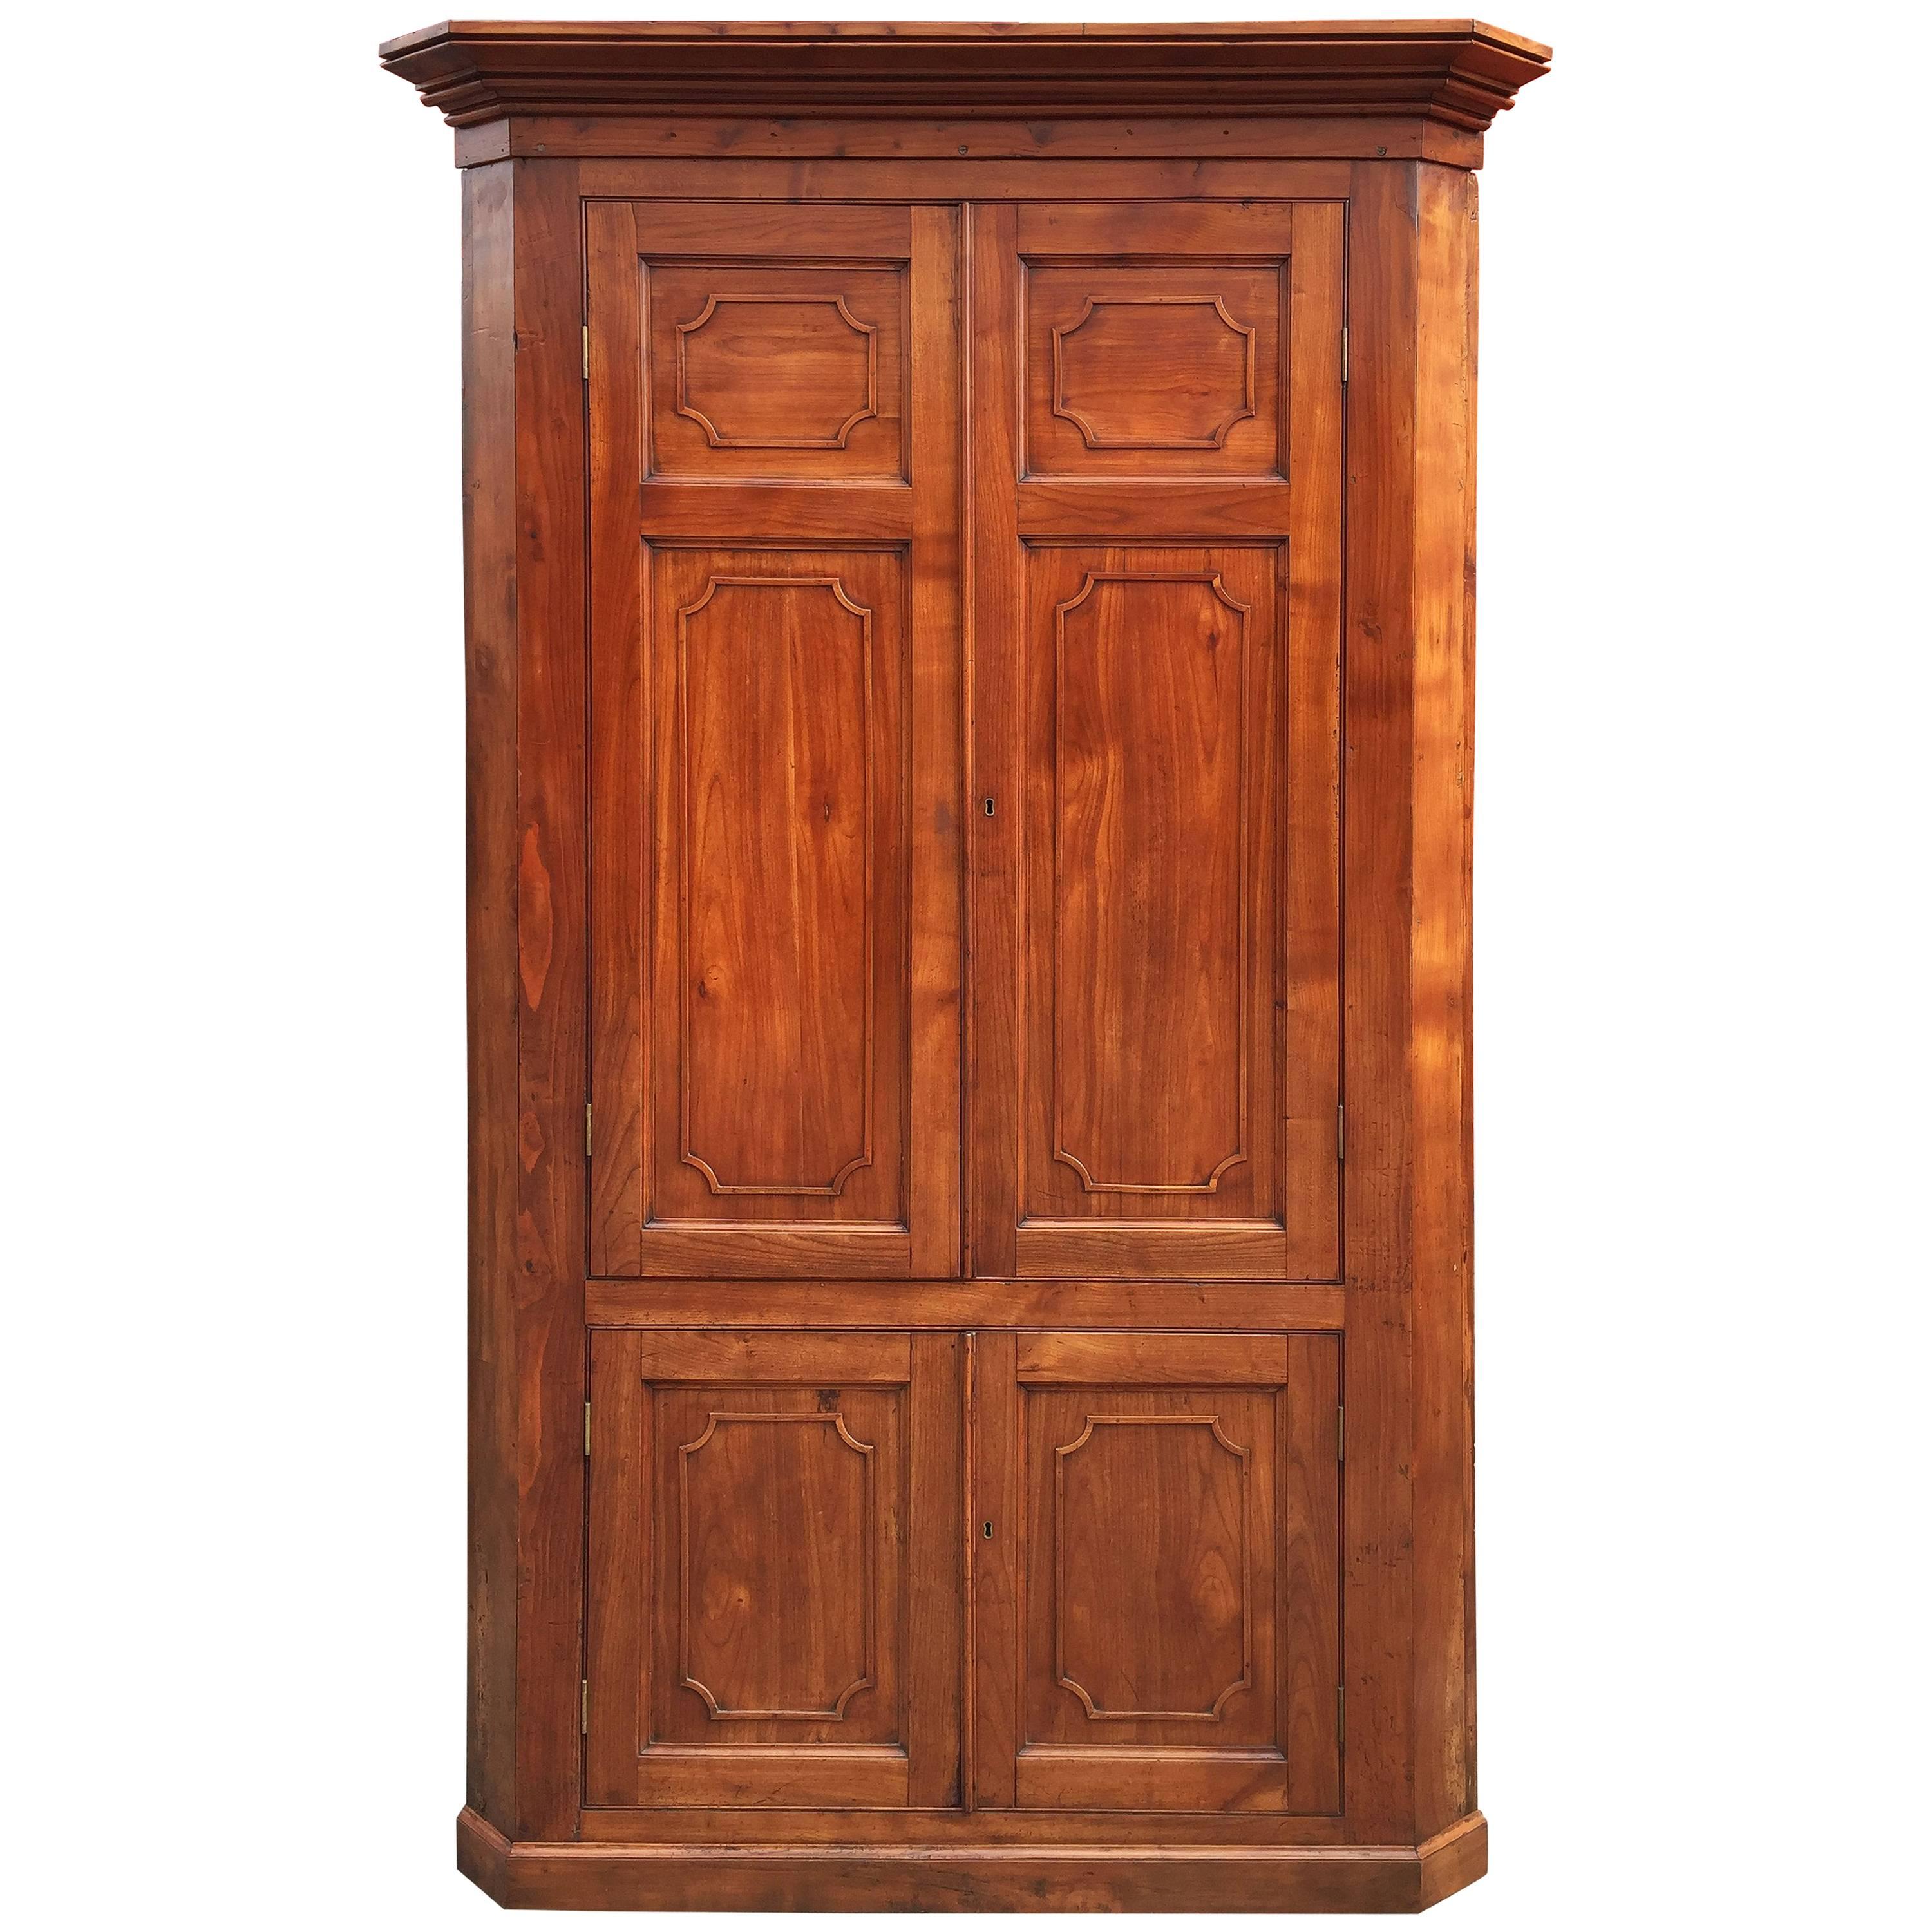 Großer zweistöckiger Eckschrank oder Schrank aus Kirschbaumholz mit getäfelten Türen